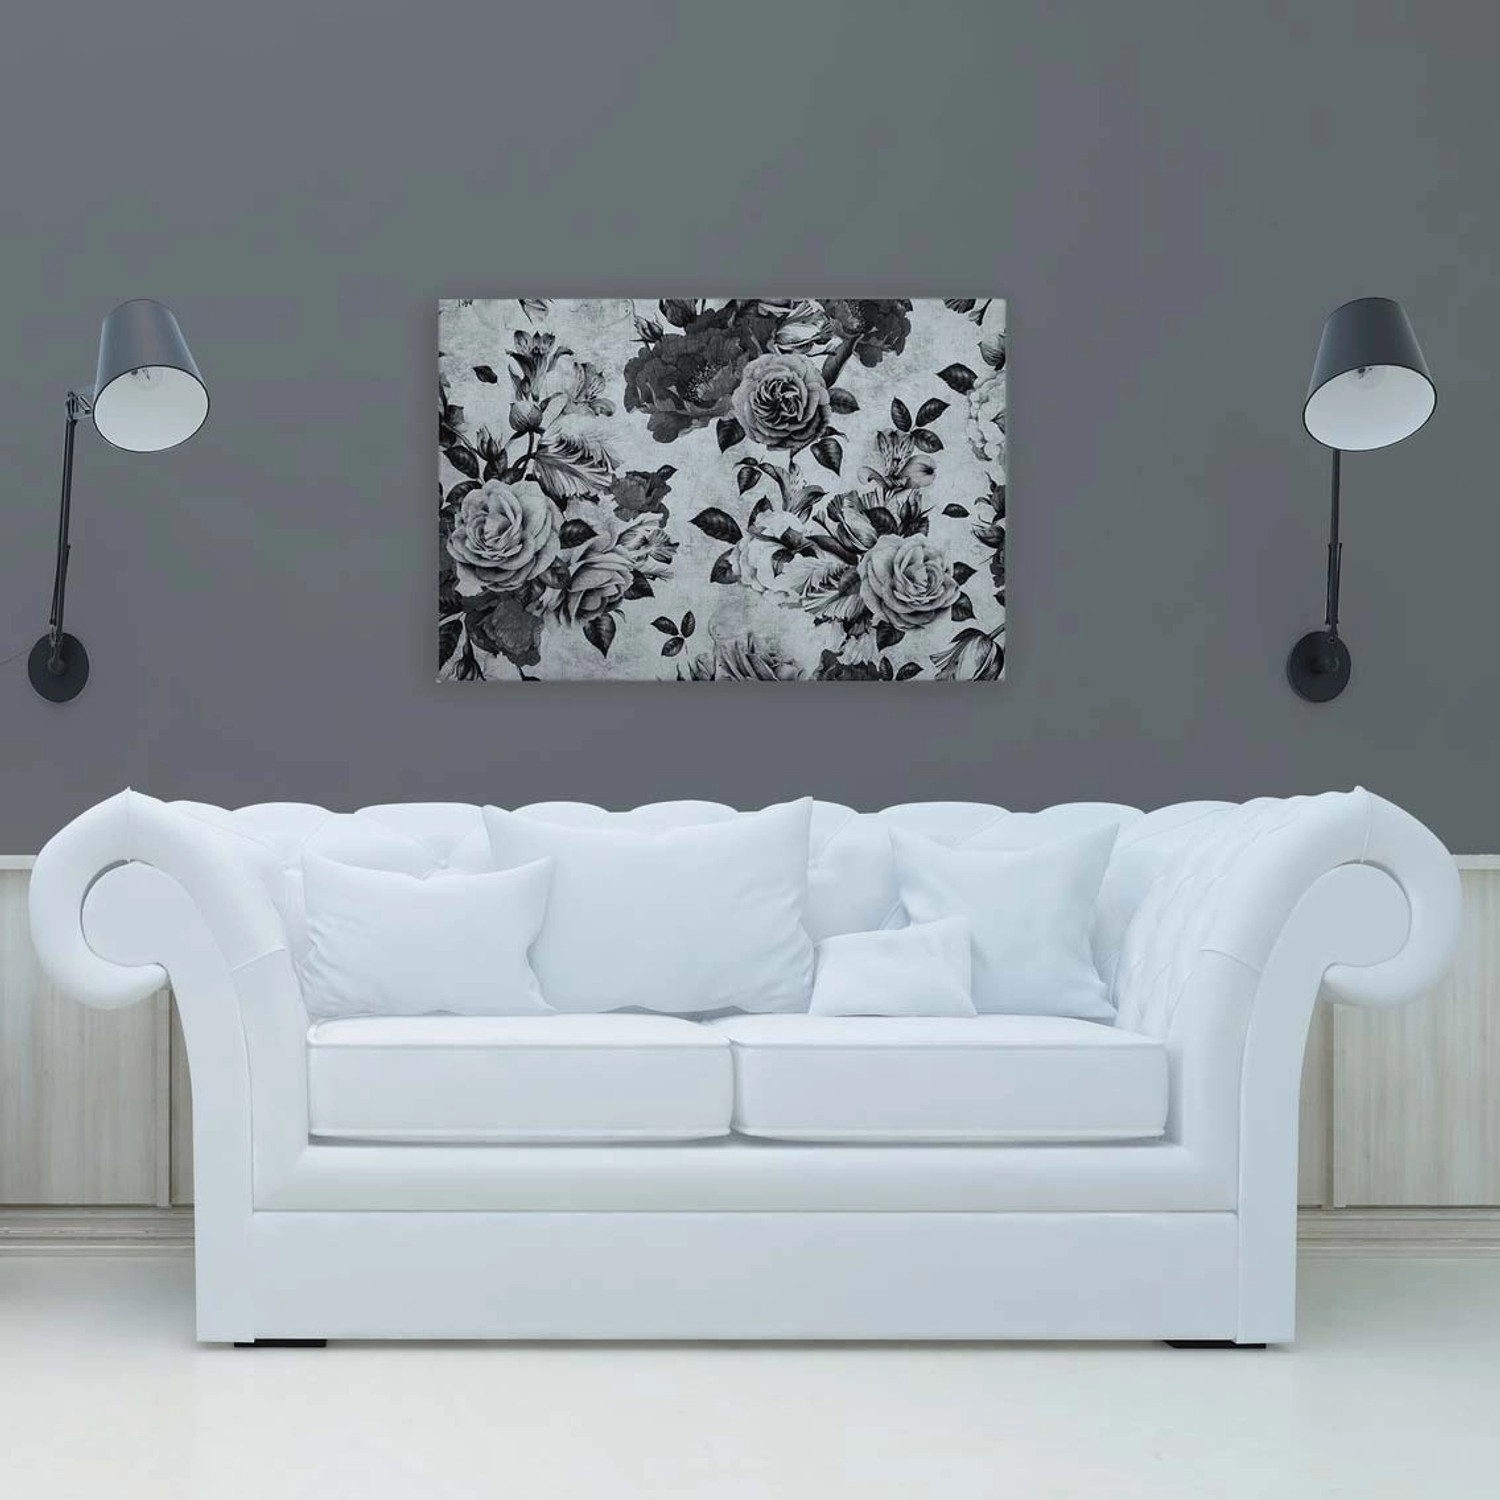 Bricoflor Bild Mit Rosen Auf Leinwand 90 X 60 Cm Deko Leinwandbild Schwarz Weiß Mit Blumen Vintage Wandbild Für Schlafzi